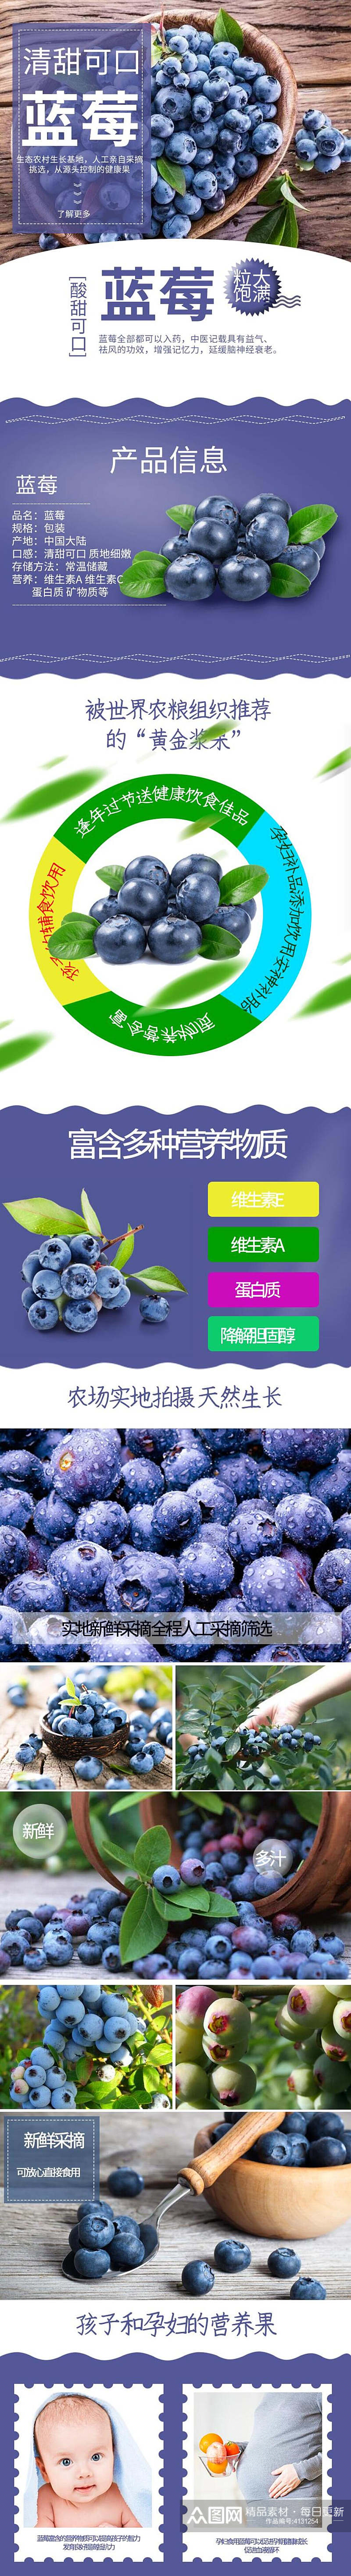 创意清甜可口蓝莓水果详情页素材